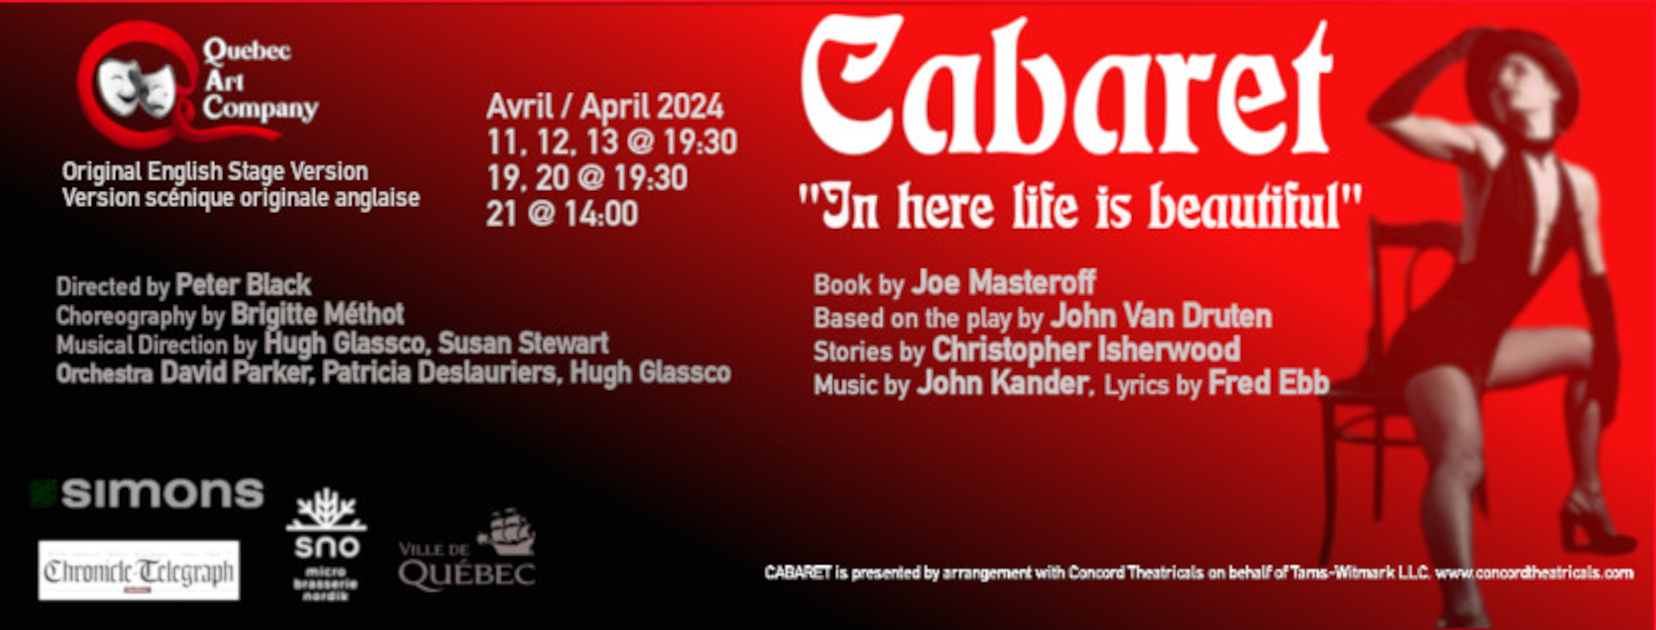 April 2024 Spring production: Cabaret